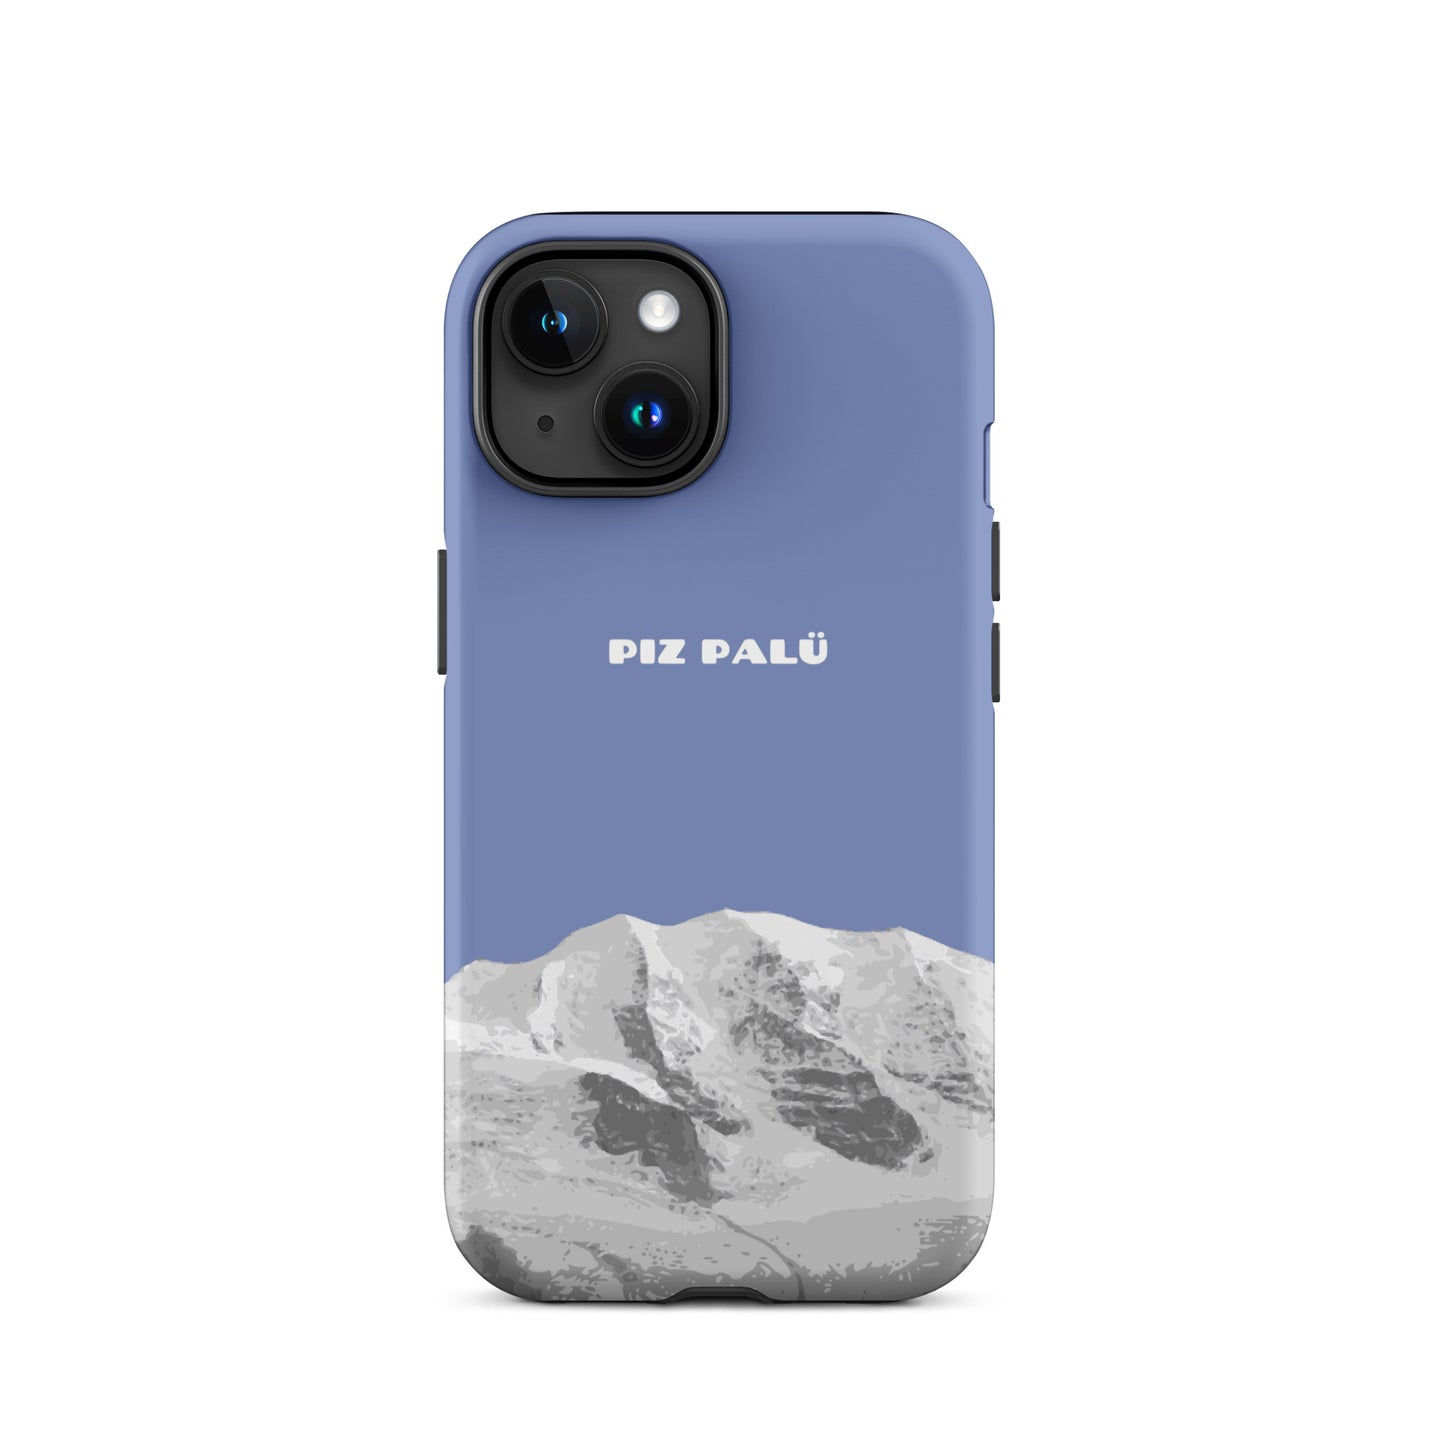 Hülle für das iPhone 15 von Apple in der Farbe Pastellblau, dass den Piz Palü in Graubünden zeigt.